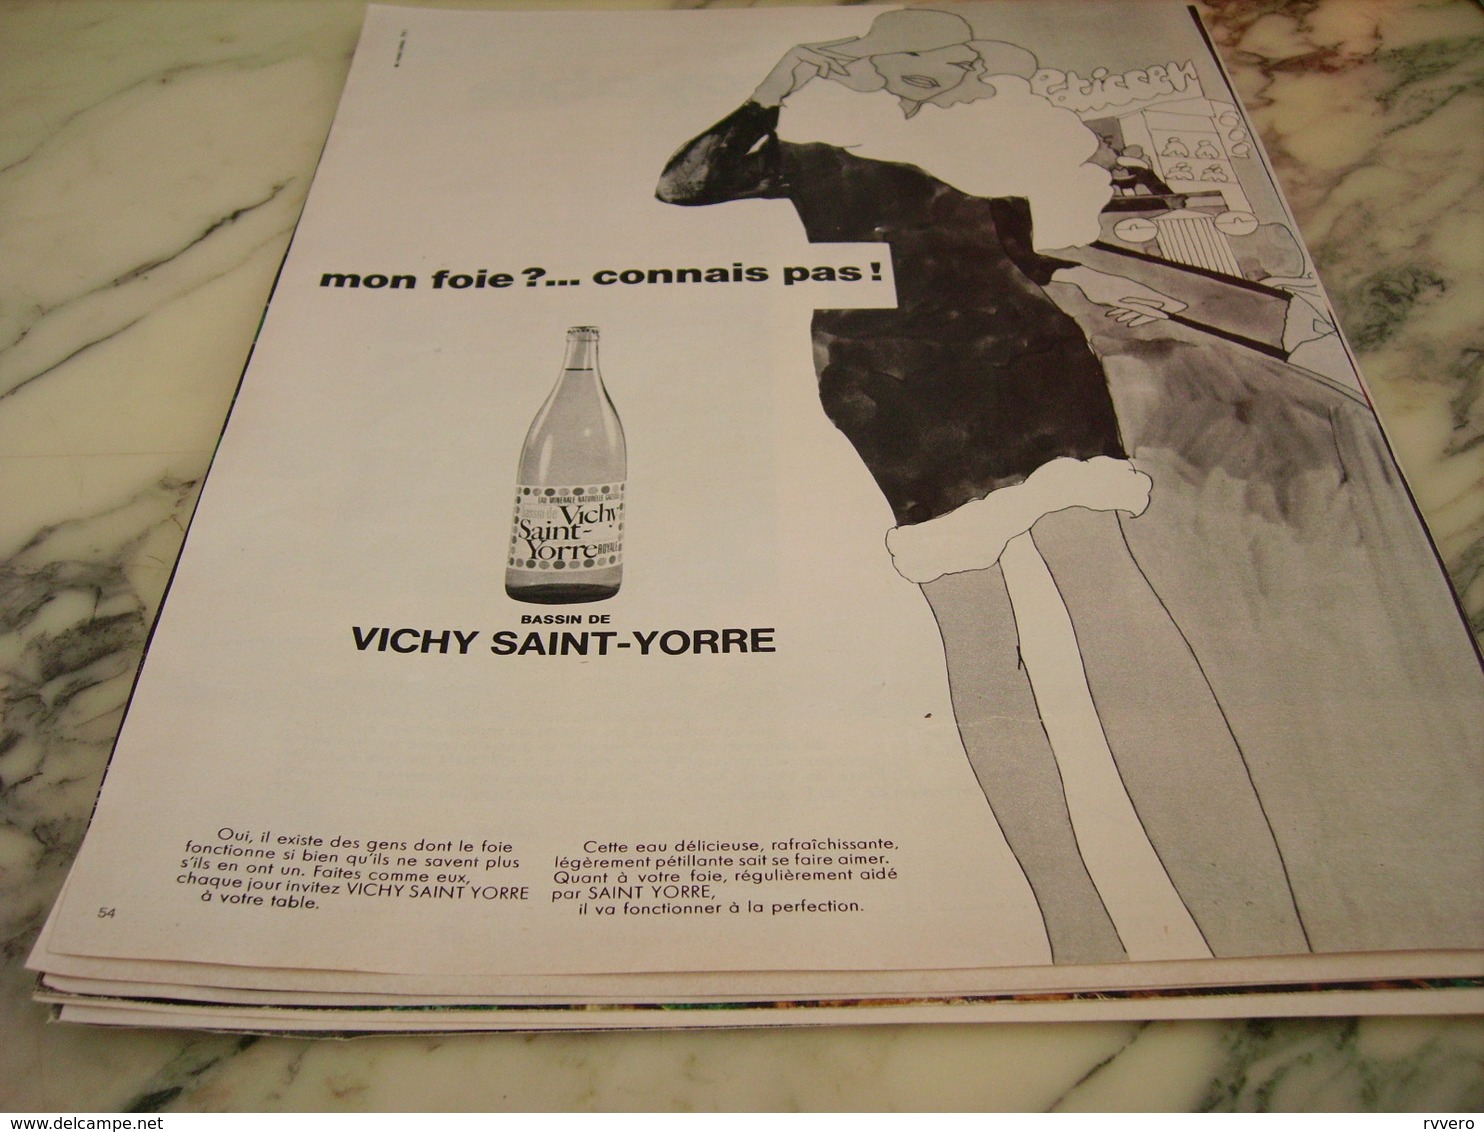 ANCIENNE PUBLICITE MON FOIE CONNAIS PAS VICHY SAINT YORRE 1968 - Affiches